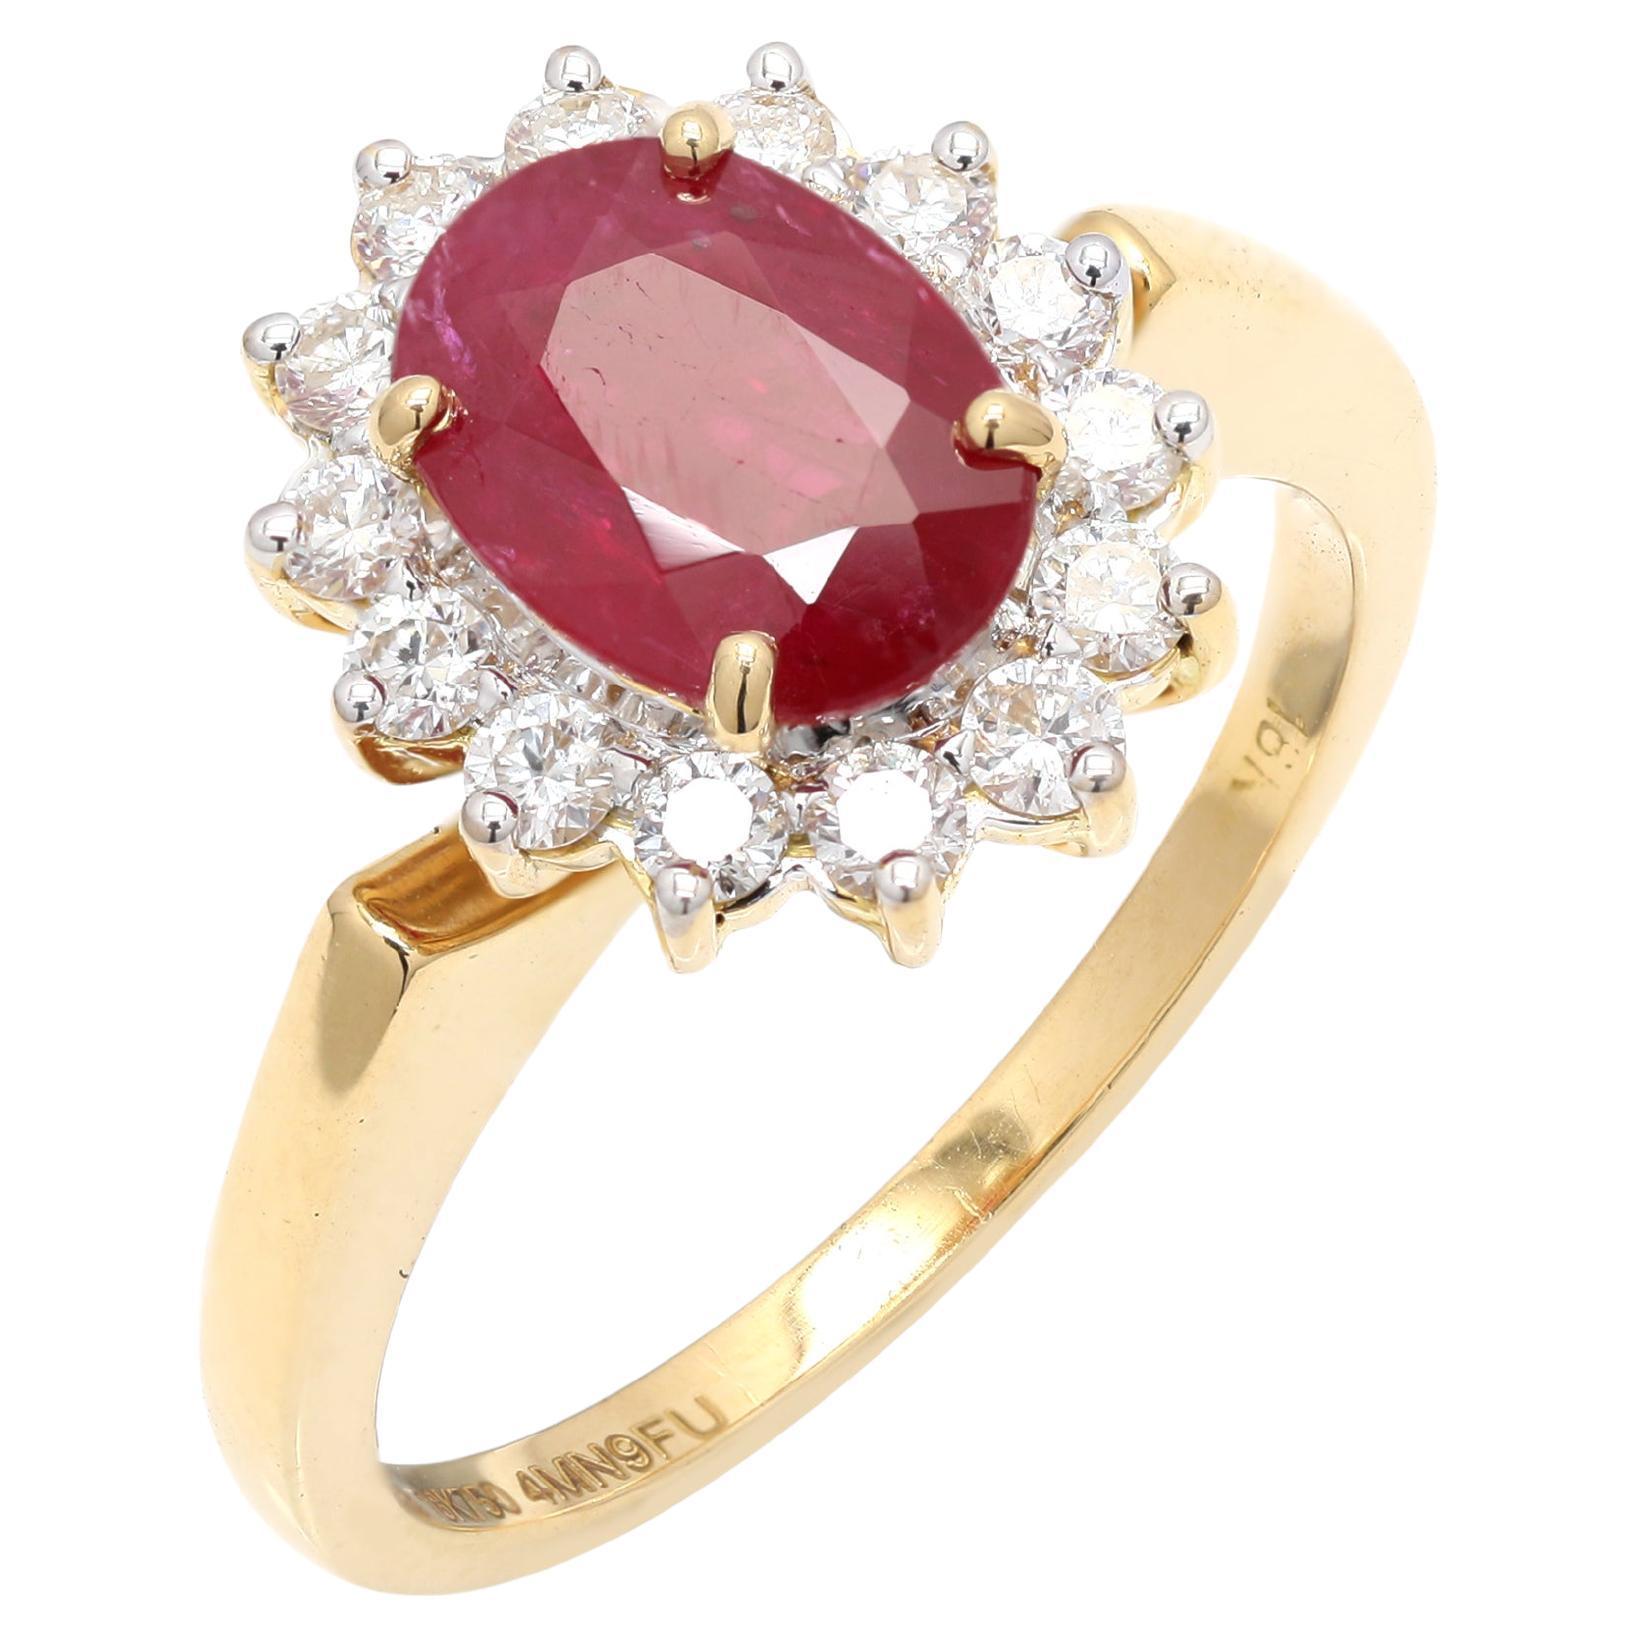 Bague en or jaune massif 18 carats, rubis rouge profond de 1,83 carat et diamant halo